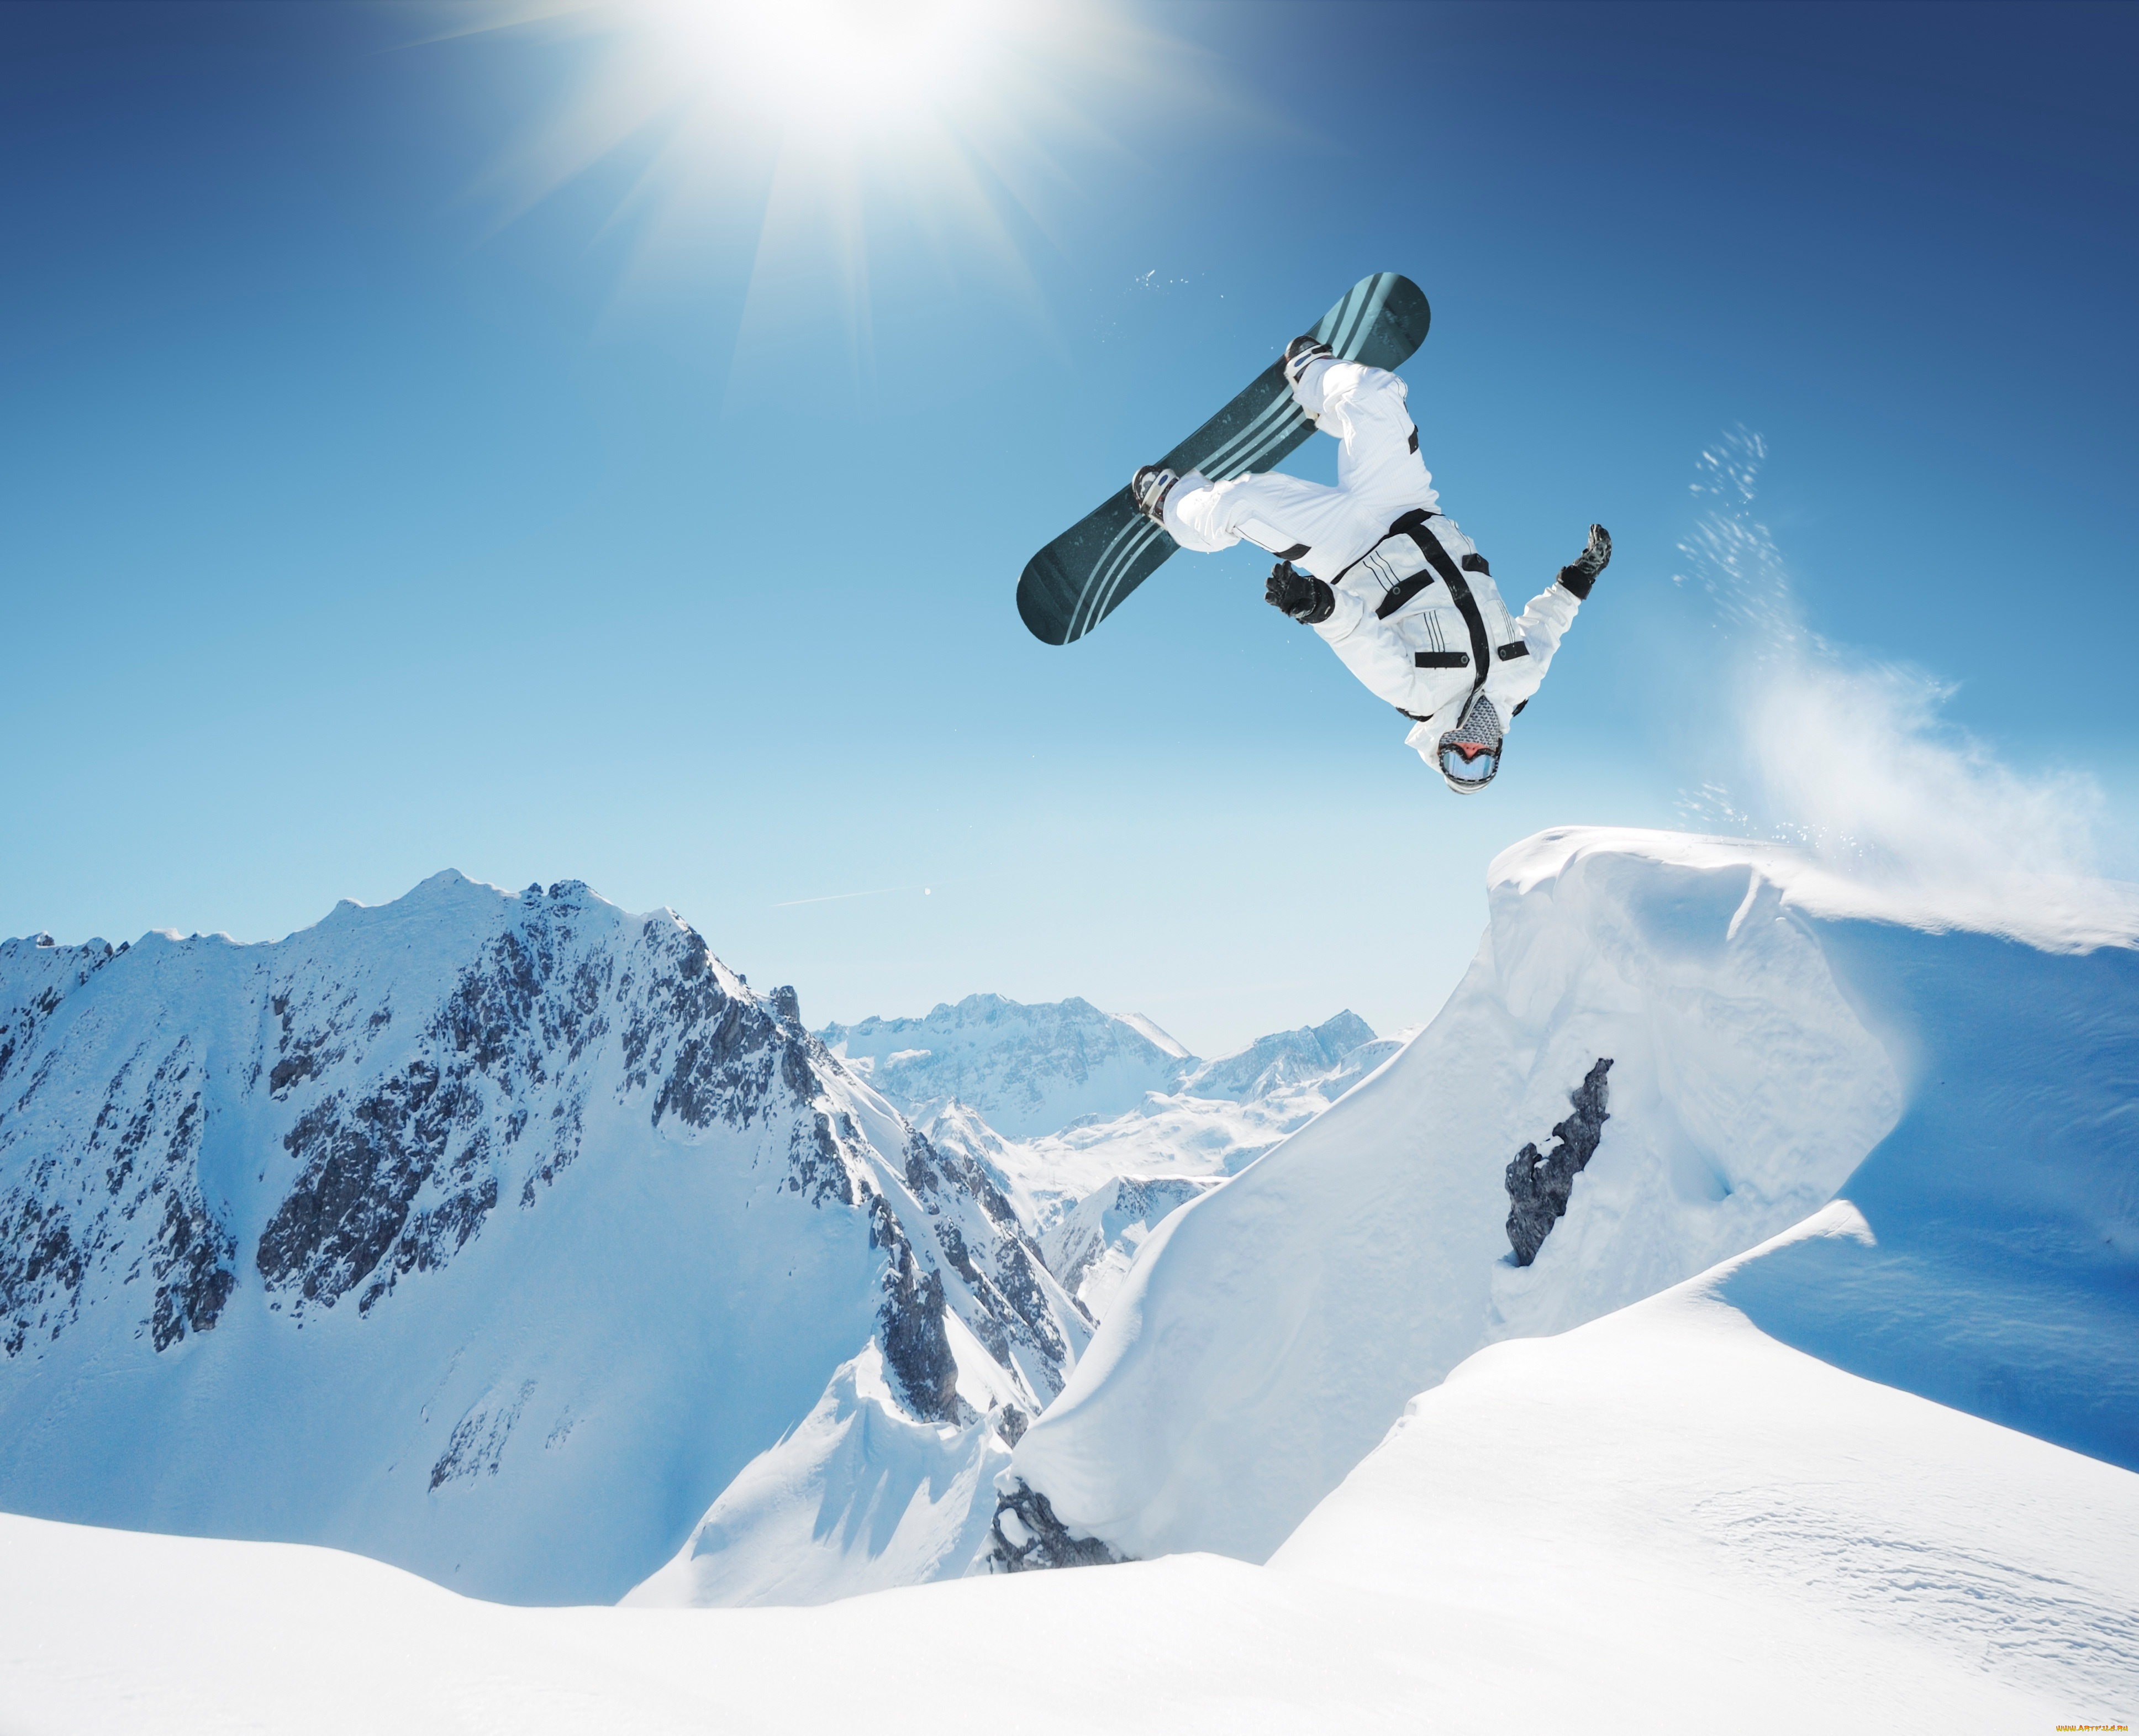 спорт, сноуборд, небо, горы, очки, сальто, солнце, природа, снег, зима, доска, snowboarding, прыжок, облака